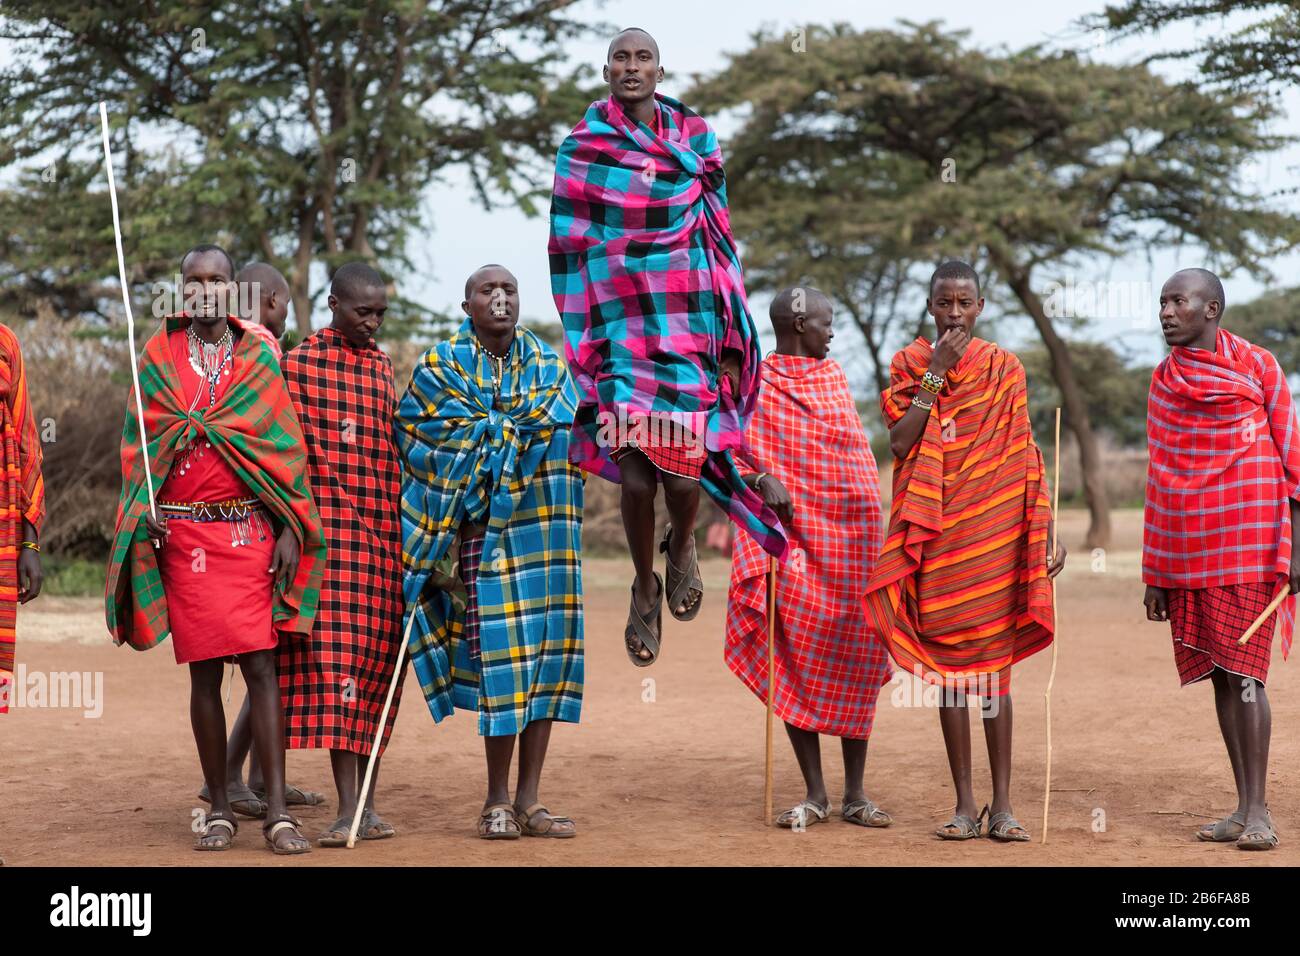 Maasai warriors doing an Adamu jump dance. Stock Photo